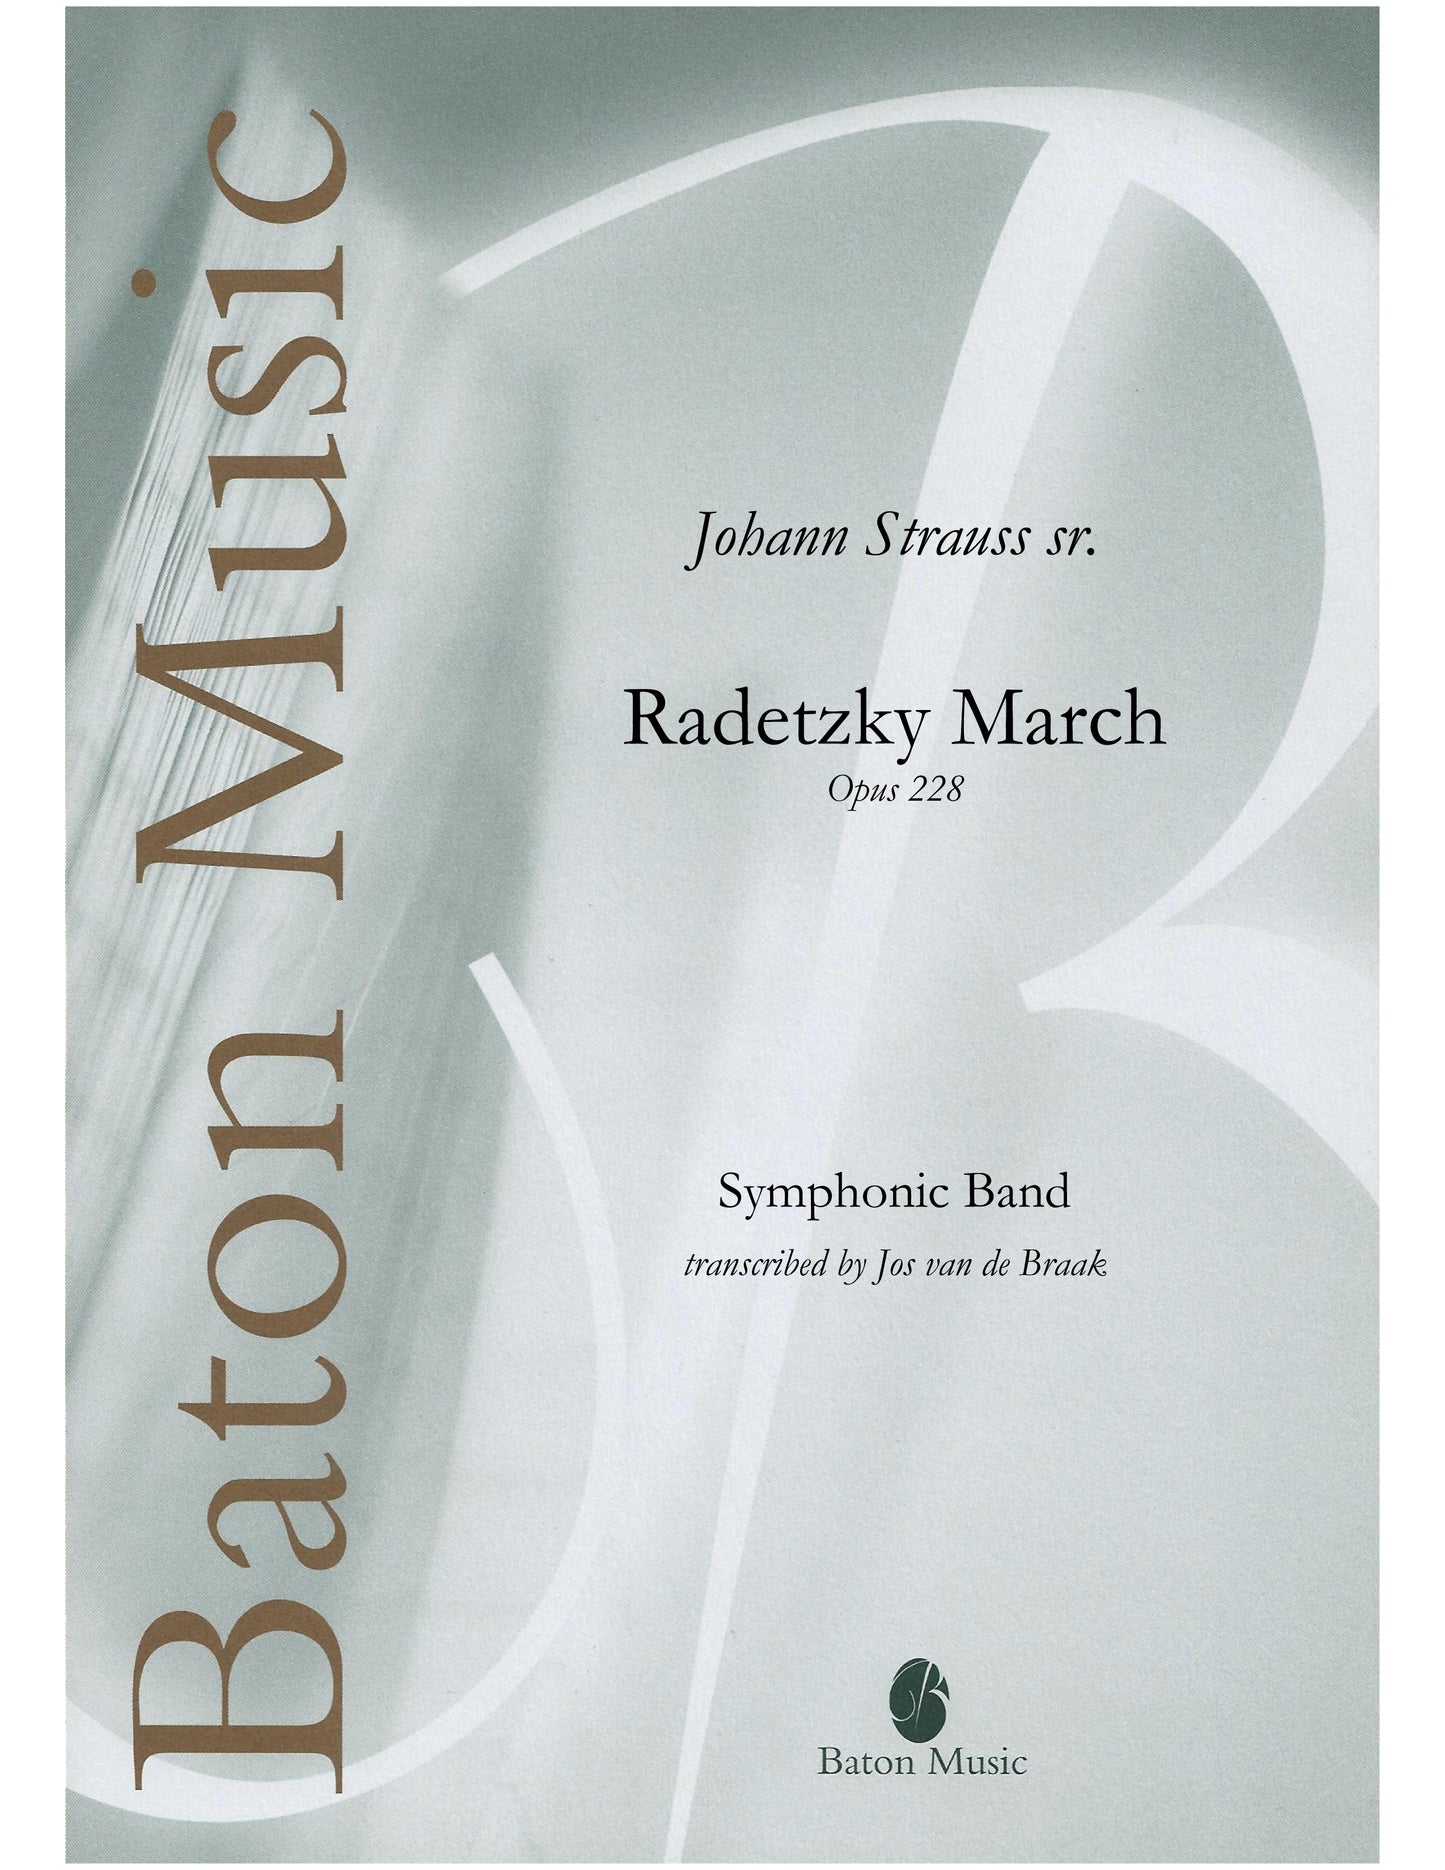 Radetzky Marsch - Johann Strauss